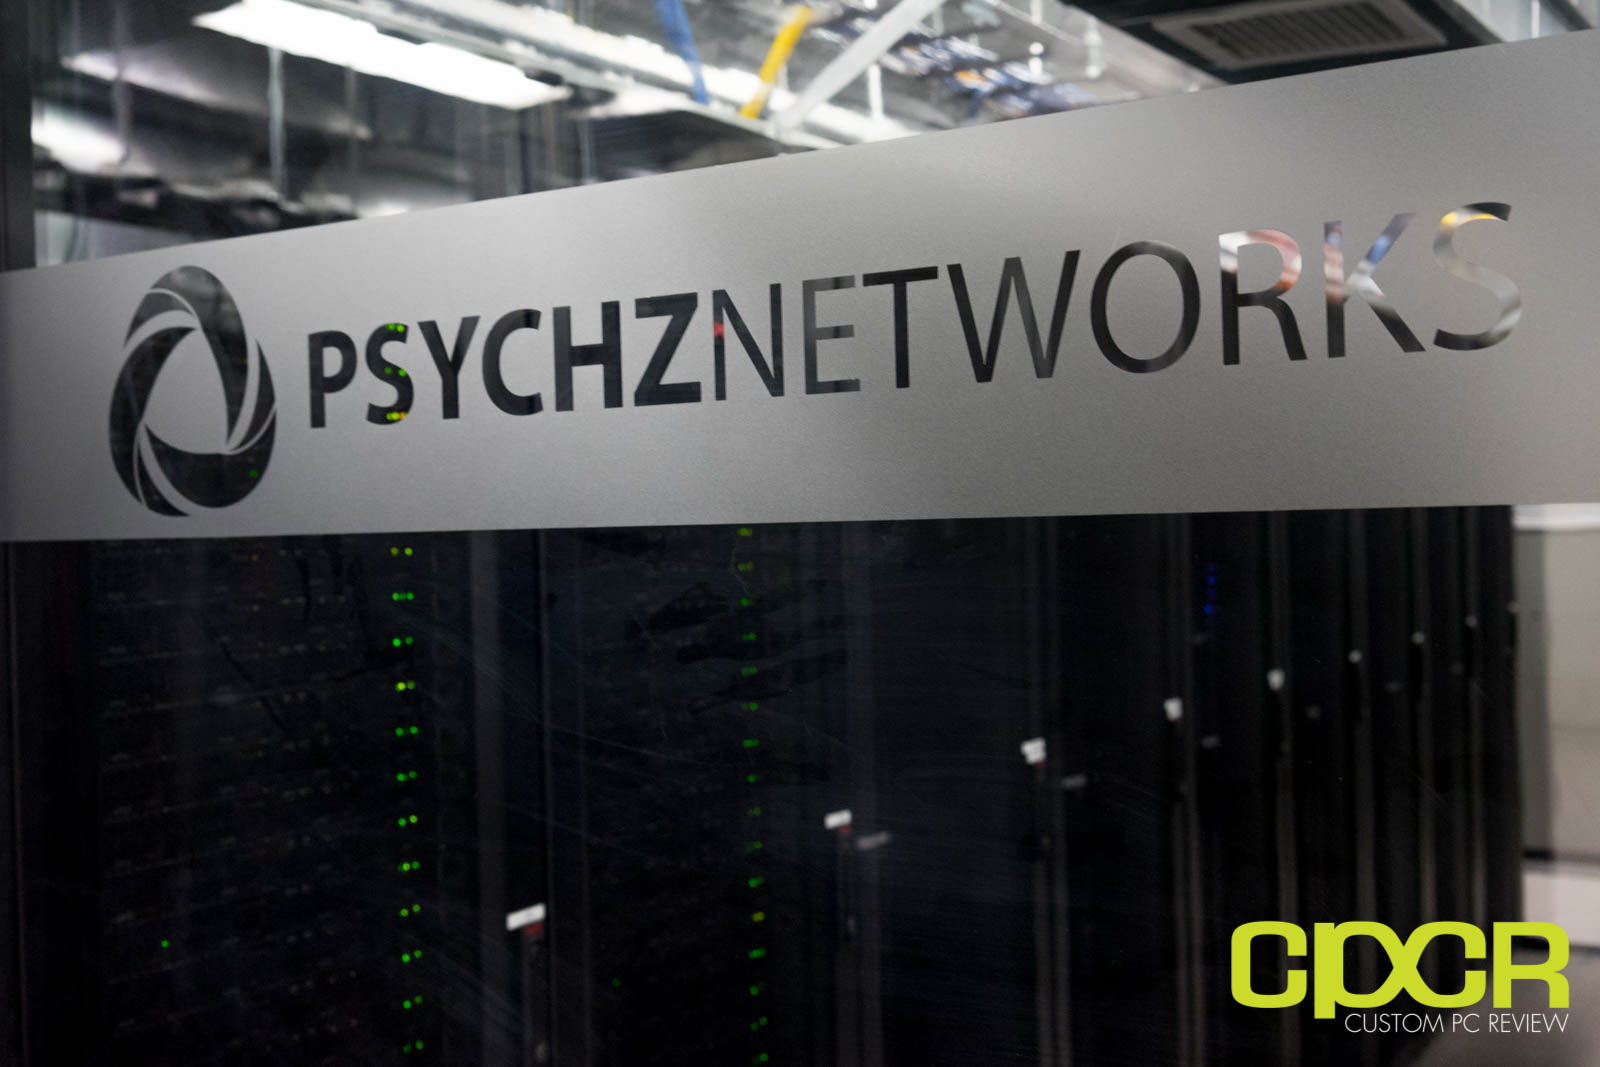 CPCR Server Upgrade 2015: Psychz Networks Los Angeles Colocation